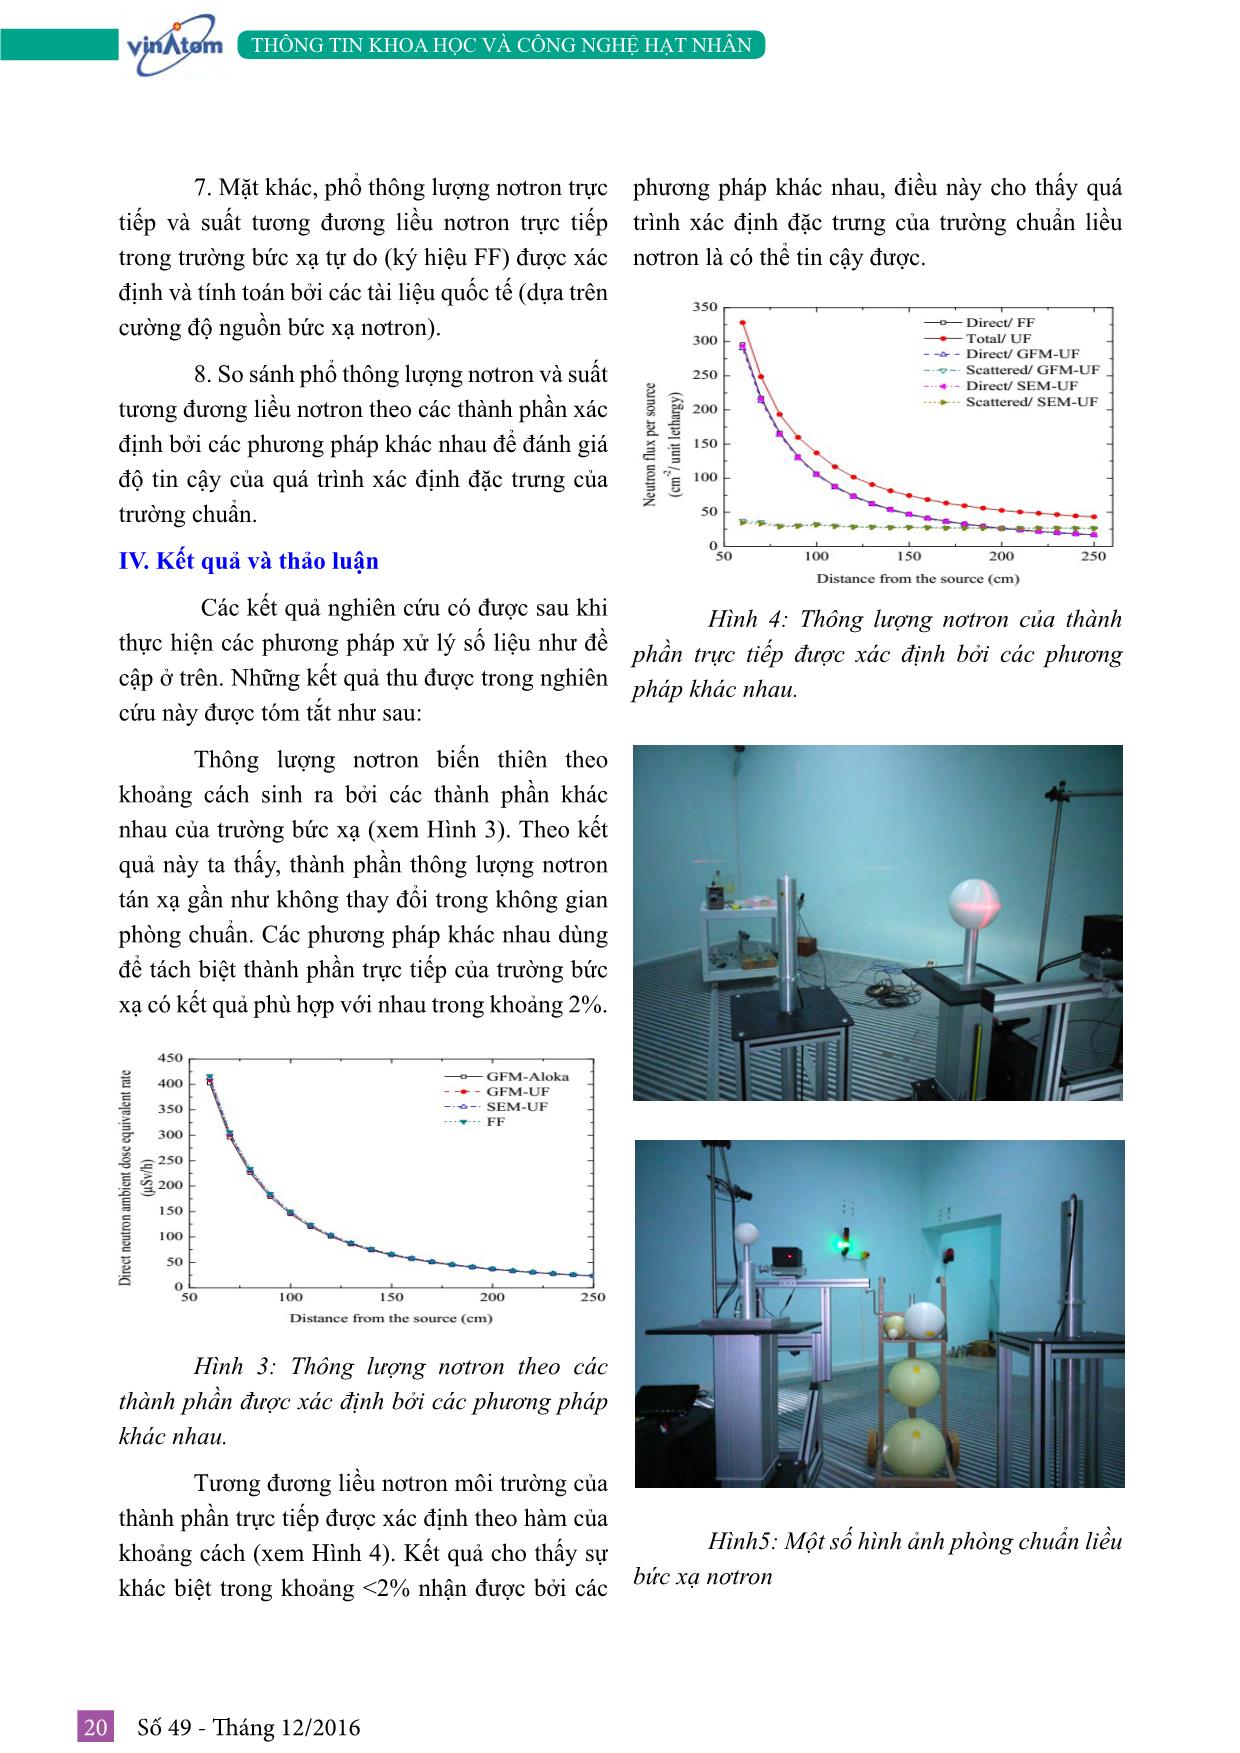 Thiết lập trường chuẩn liều nơtron tại Viện Khoa học và Kỹ thuật hạt nhân trang 4